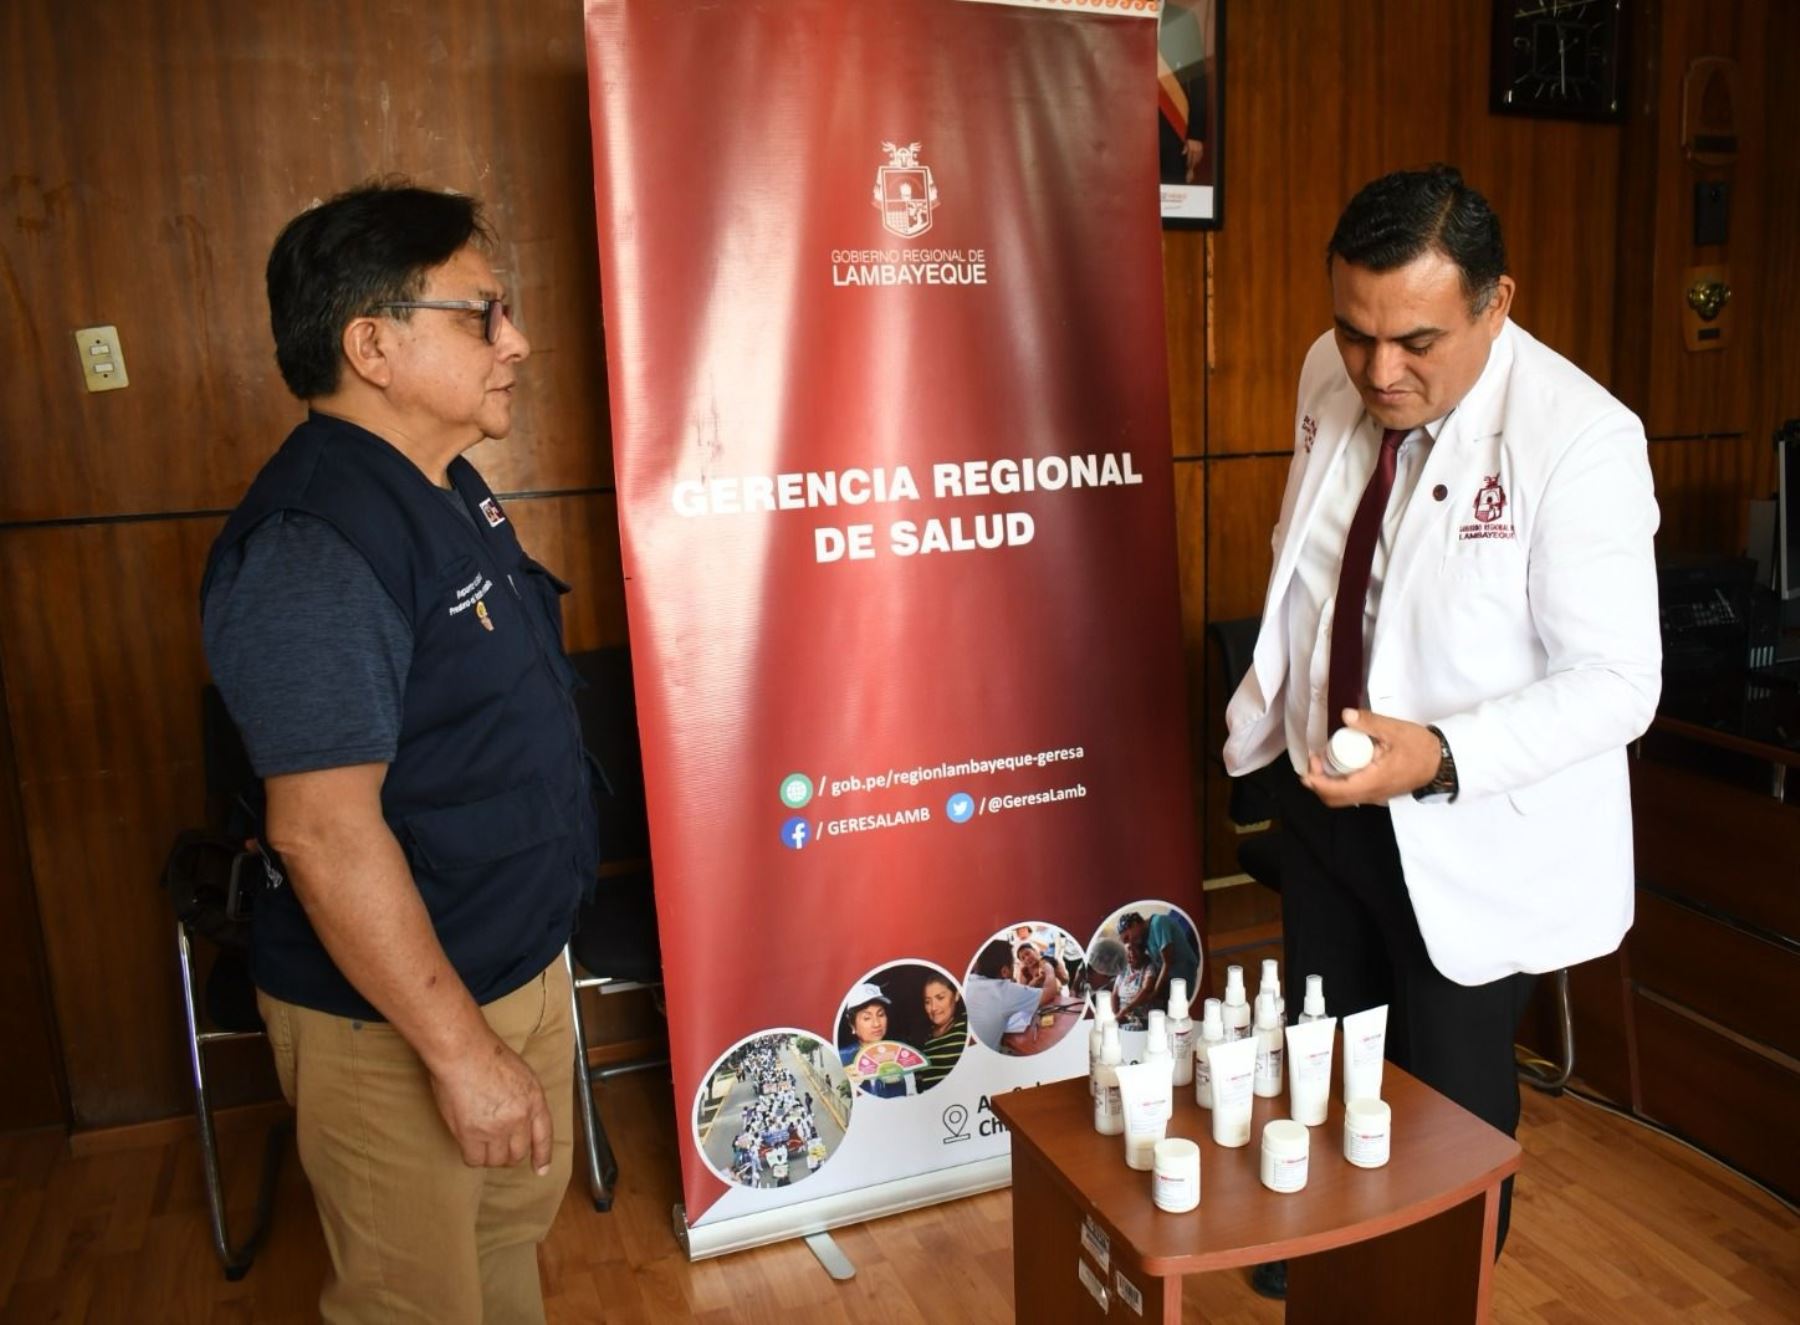 El Ministerio de Salud Incorporó al repelente en gel creado en el Hospital Regional Lambayeque en la lista de productos contra el dengue y que puede ser utilizado en diversas regiones del país. ANDINA/Difusión